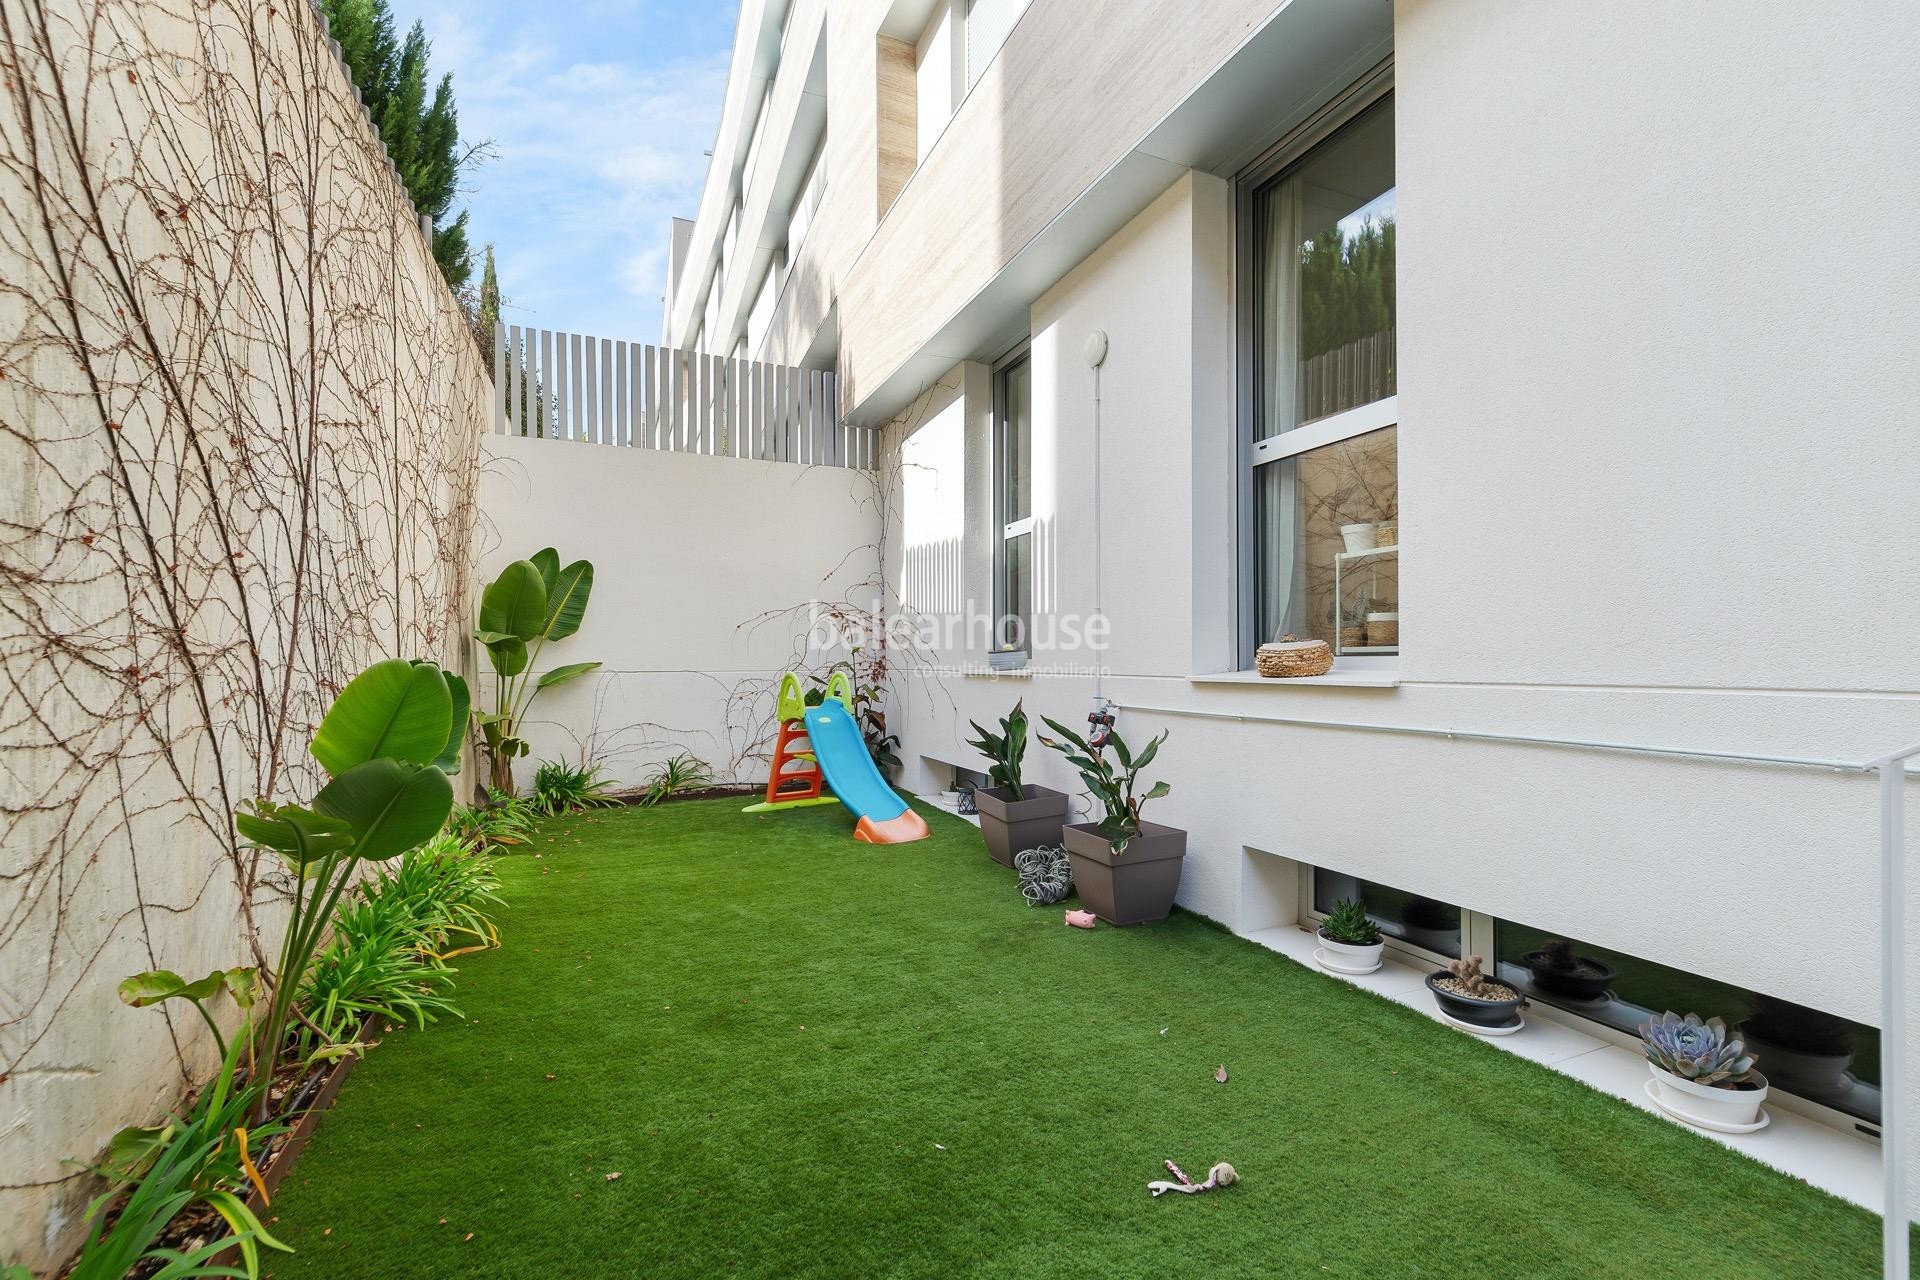 Fantástica planta baja dúplex con terraza y jardín en exclusivo complejo residencial en Son Quint.